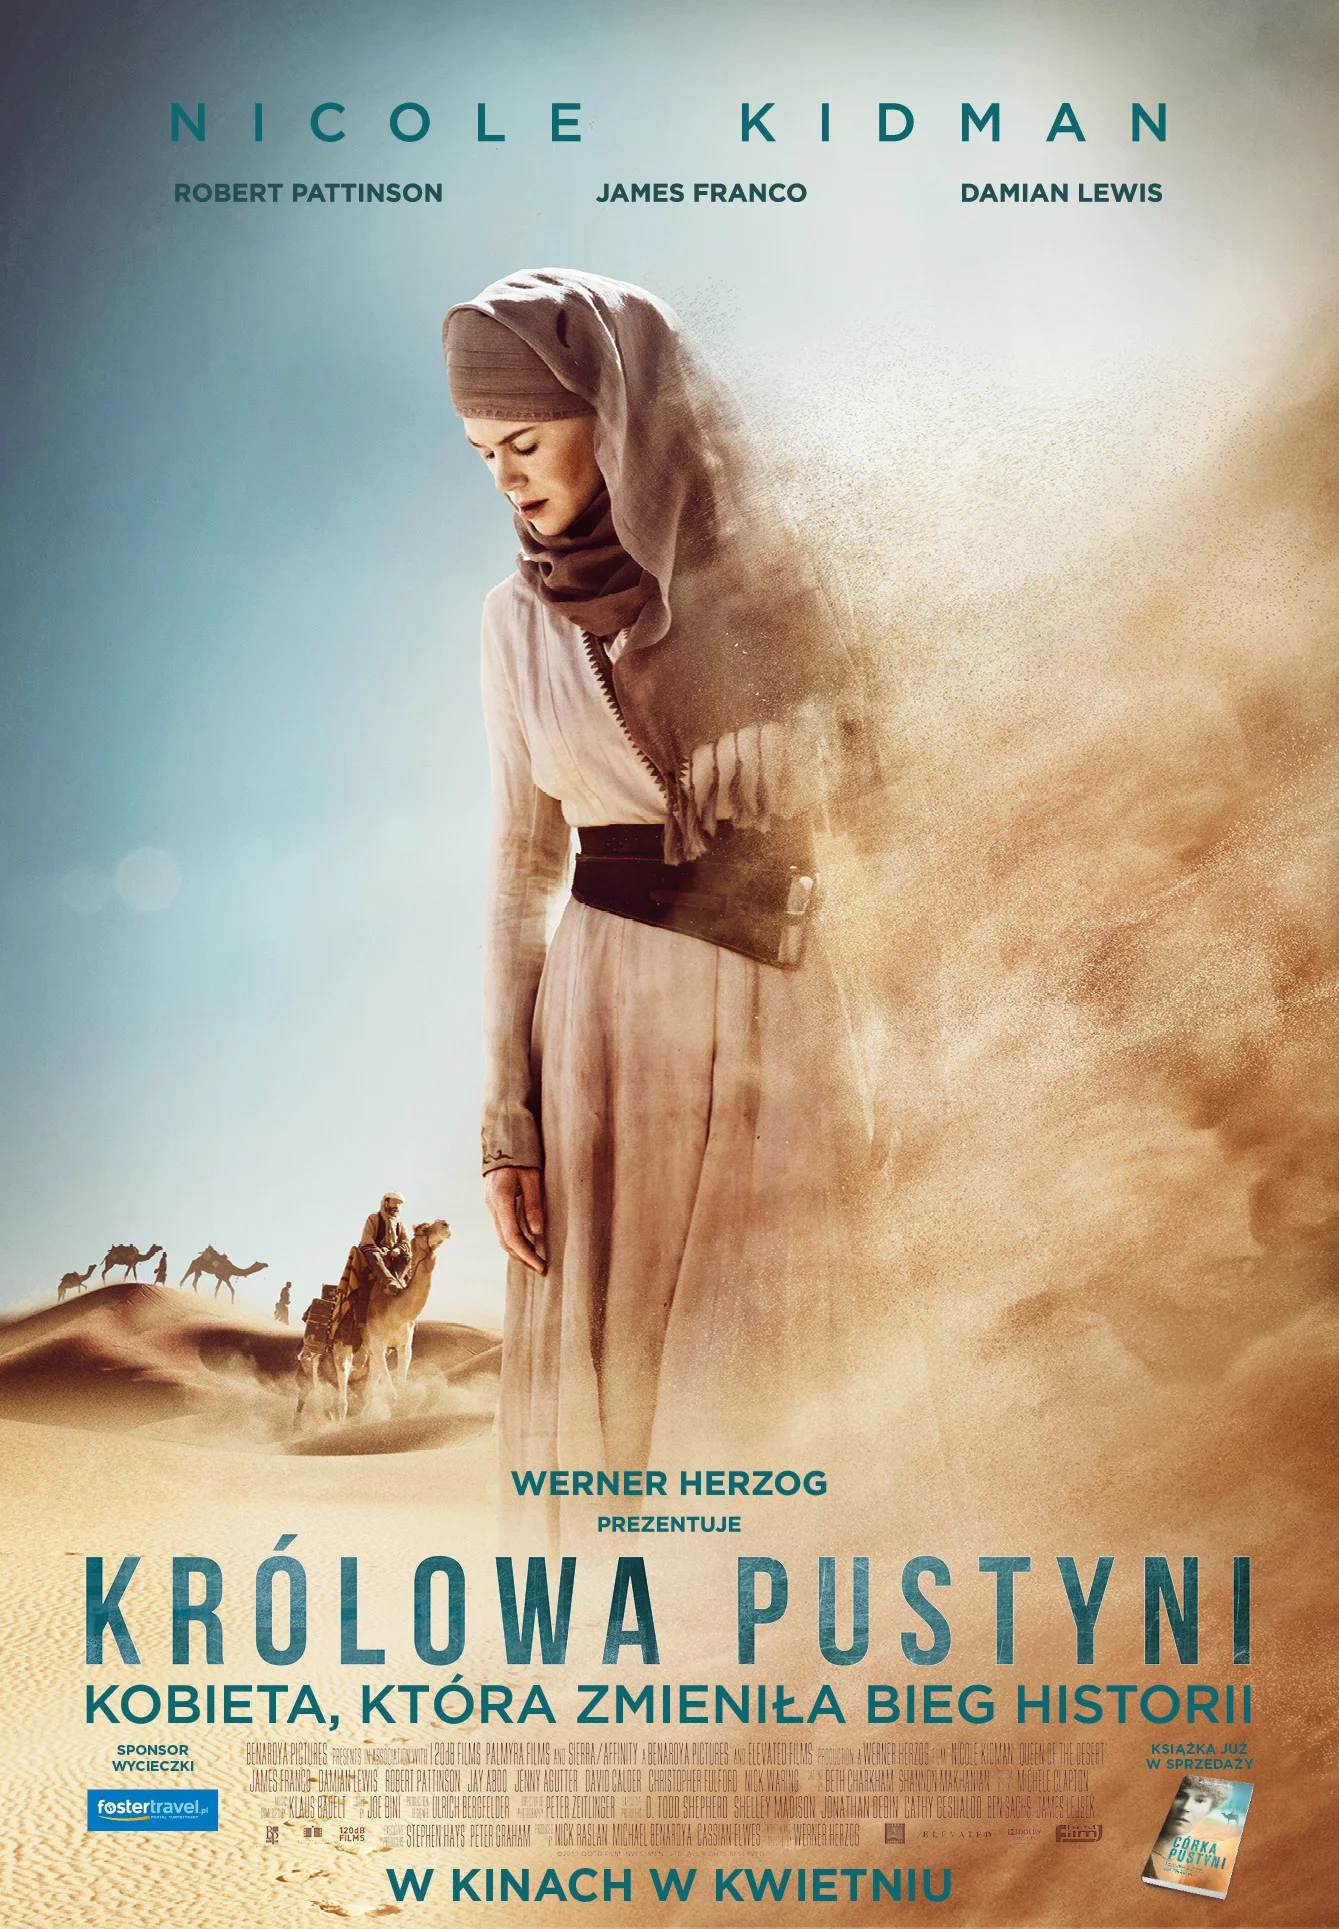 Letnie Kino Plenerowe: "Królowa pustyni"